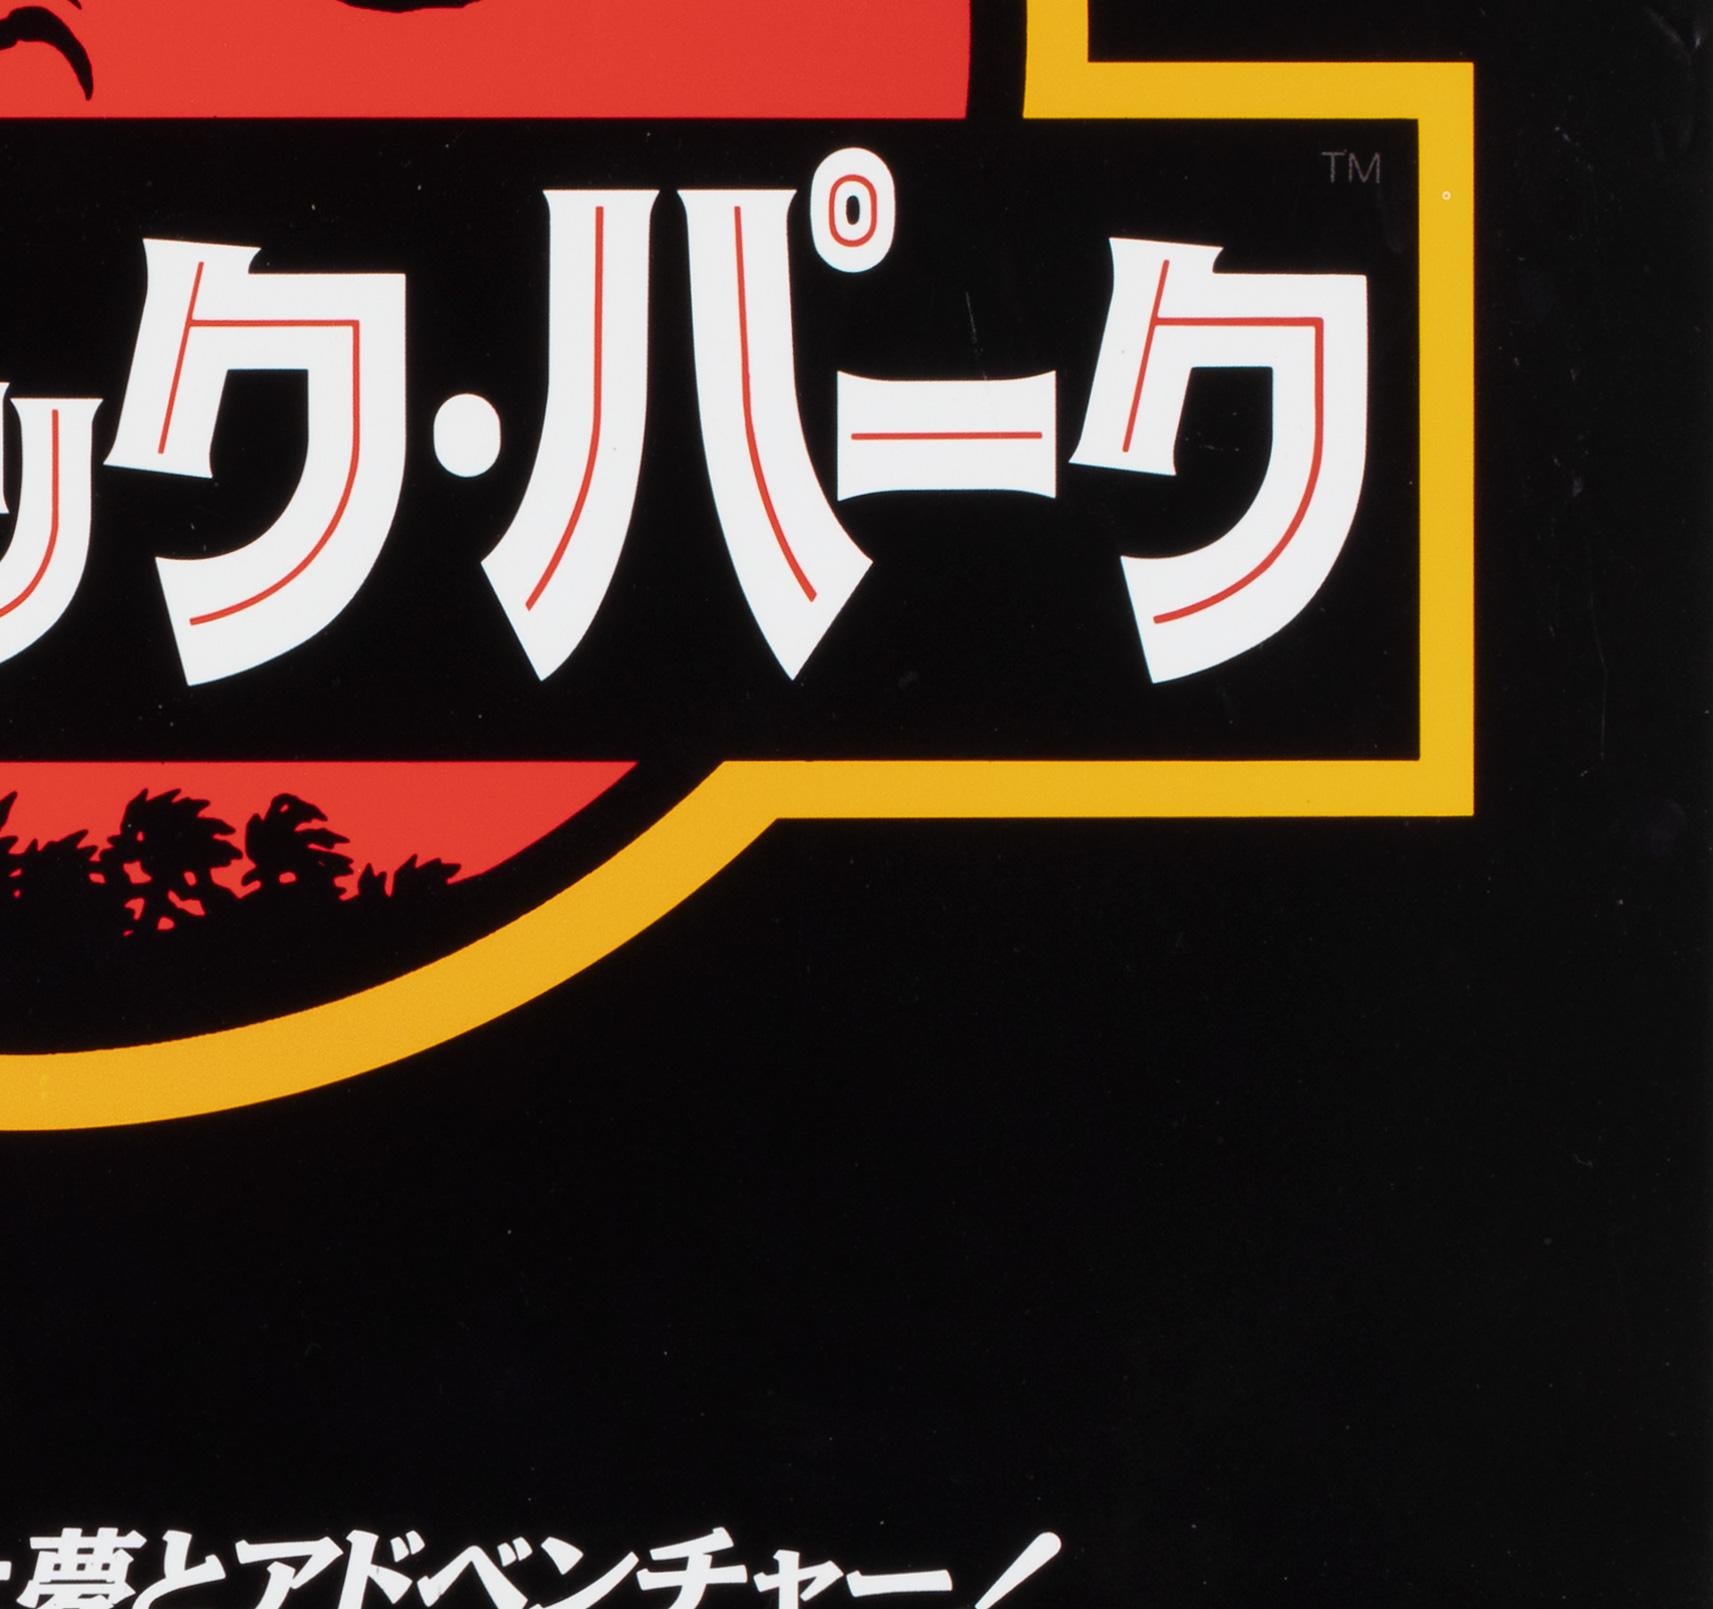 Paper Jurassic Park 1993 Japanese B2 Film Poster